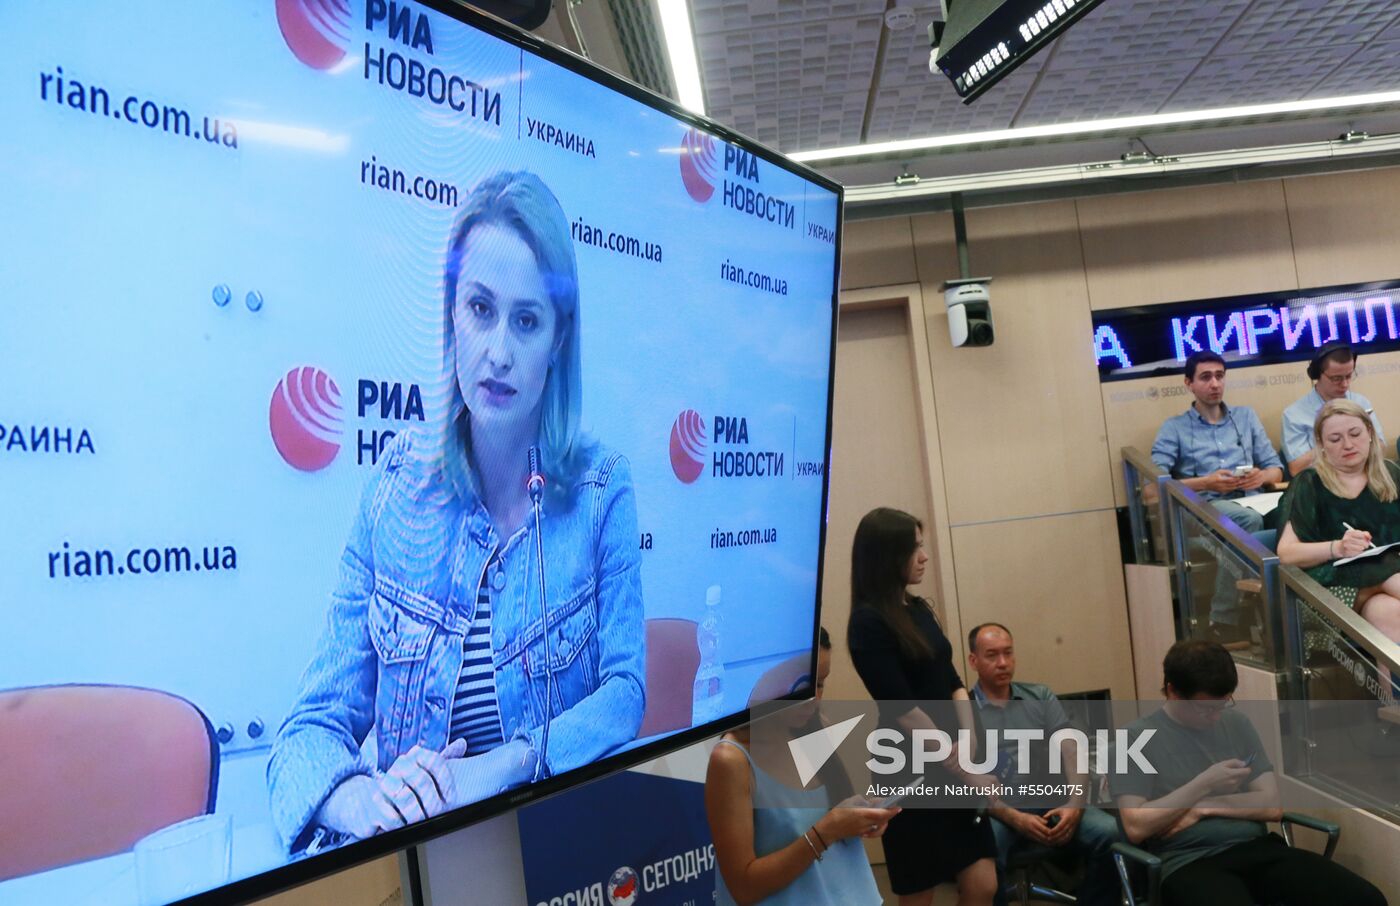 News conference of Irina Vyshinskaya